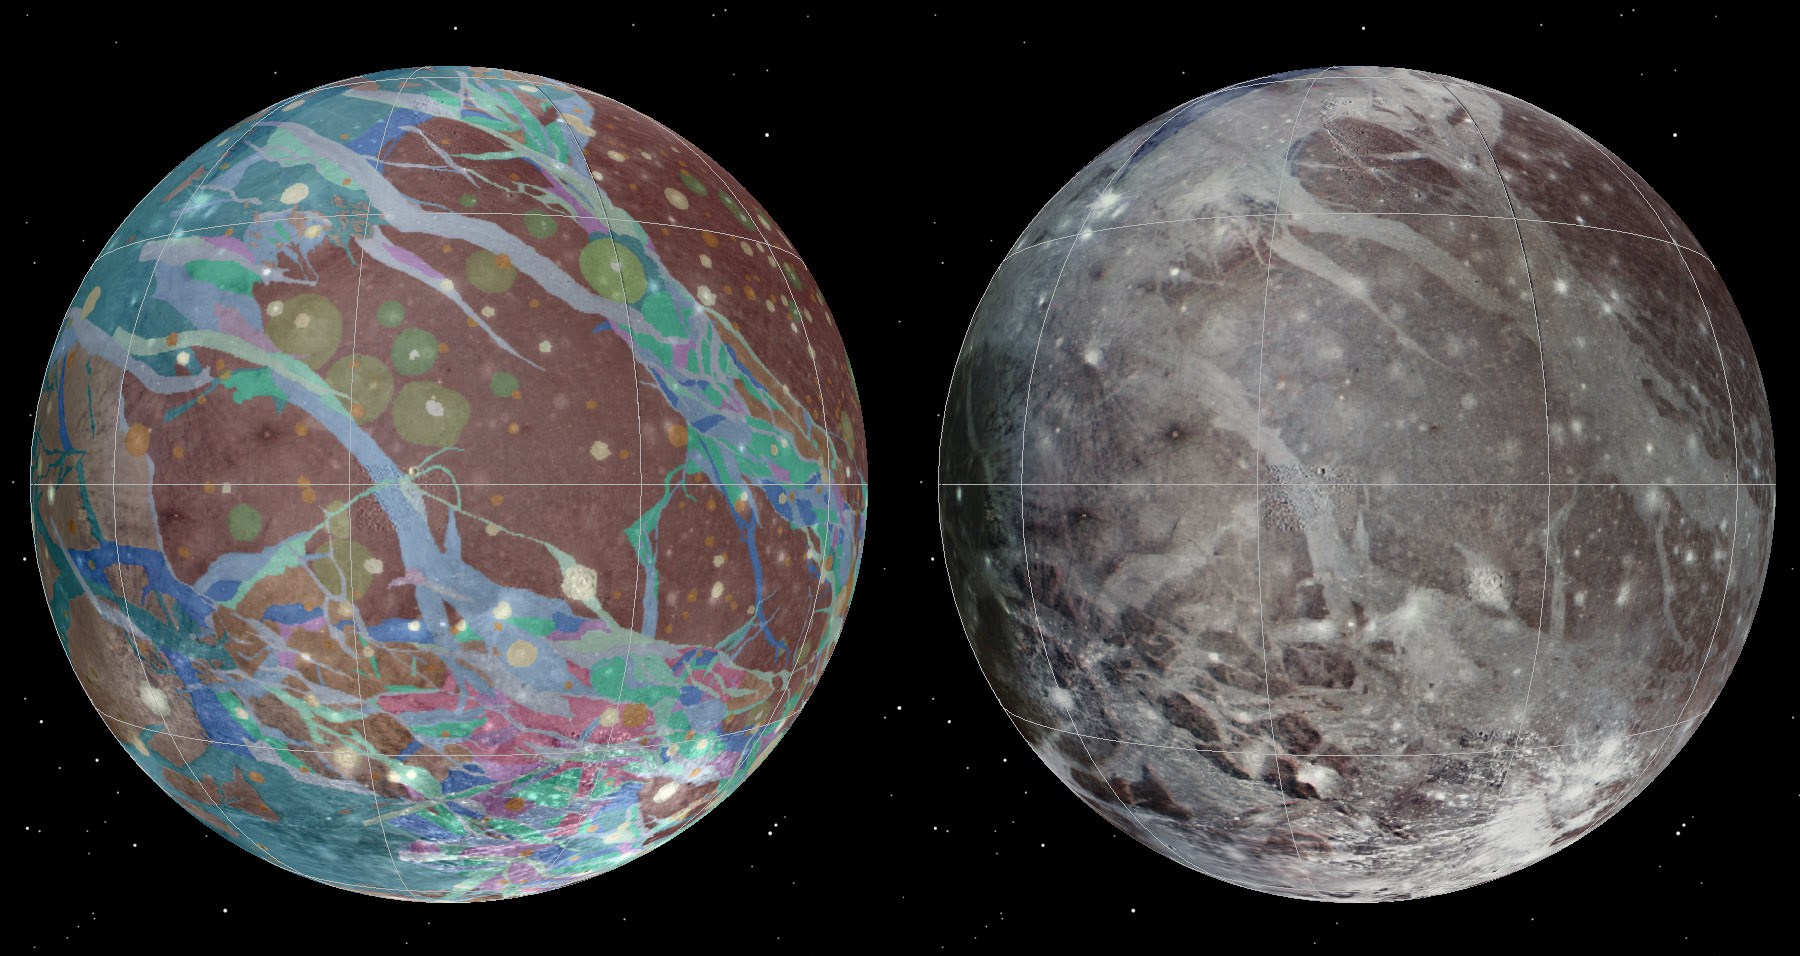 Plus gros satellite de Jupiter, la lune&nbsp;Ganymède est recouverte d'une surface glacée, formée et déformée par une variété de processus tectoniques, d'impacts et, peut-être, d'événements cryovolcaniques. L'histoire de Ganymède semble divisée en trois phases distinctes. À une époque précoce, il y a plus de 4 milliards d’années, dominée par des cratères d'impact, ont succédé une période marquée par de grands bouleversements tectoniques puis, finalement, une phase de repos caractérisée par une baisse progressive des flux de chaleur et de rares impacts. Les images et les données à l’origine de la première carte géologique de cette lune ont été recueillies au cours des survols de Voyager 1 et Voyager 2 (1979), ainsi que lors de la mission Galileo en orbite autour de Jupiter (1995-2003). © Nasa,USGS